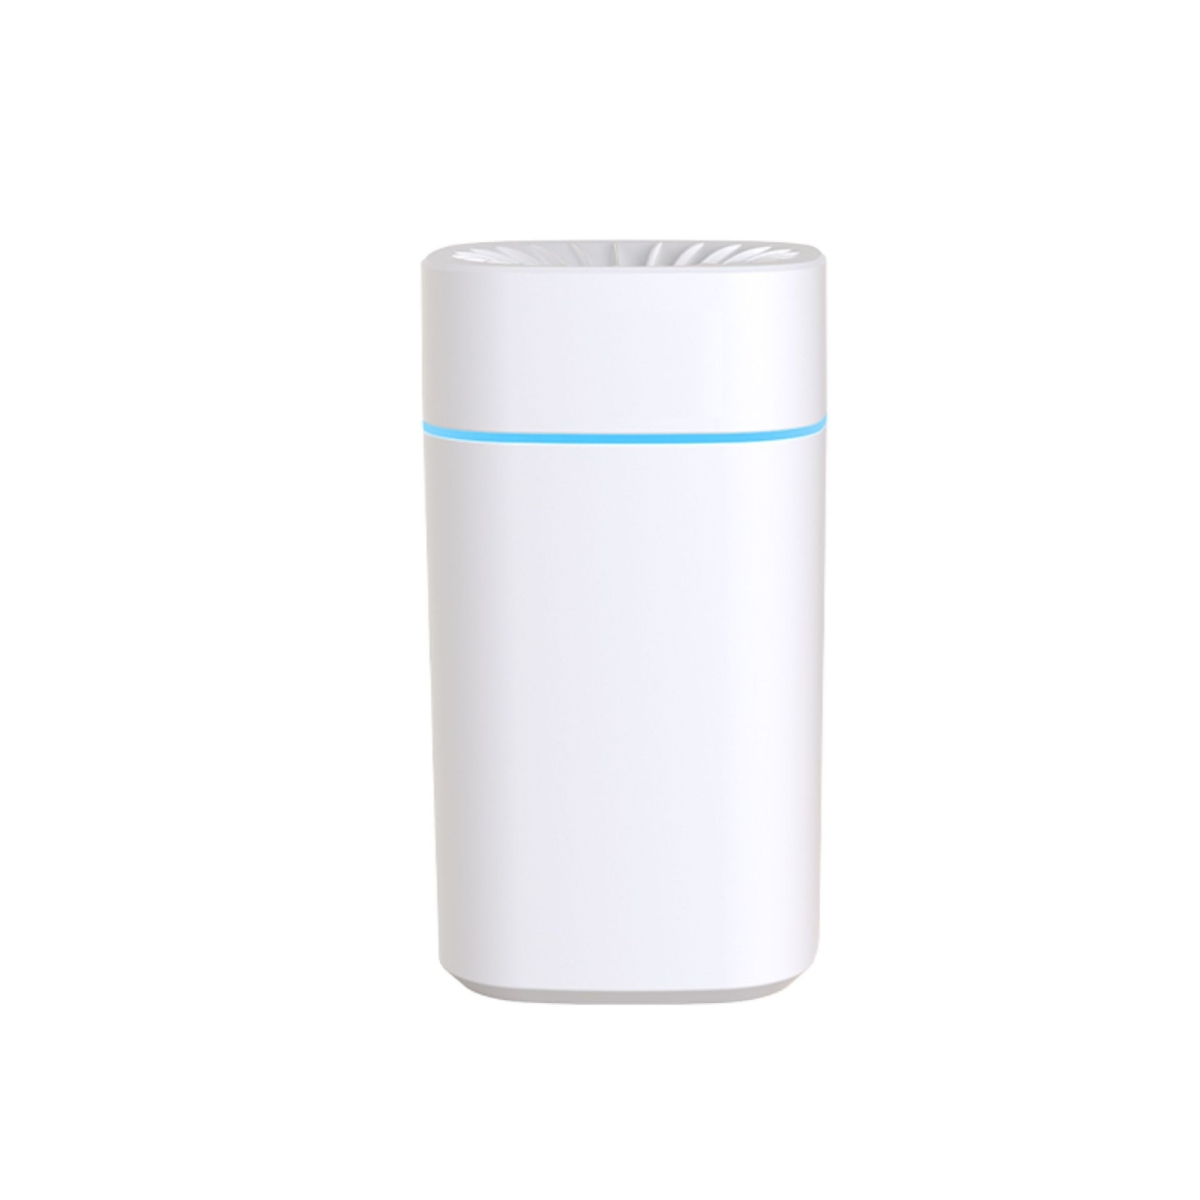 Stimmungslicht, 30 Weiß m²) Luftbefeuchter: Kompakt SHAOKE Magischer Luftbefeuchter Aromatherapie, (Raumgröße: